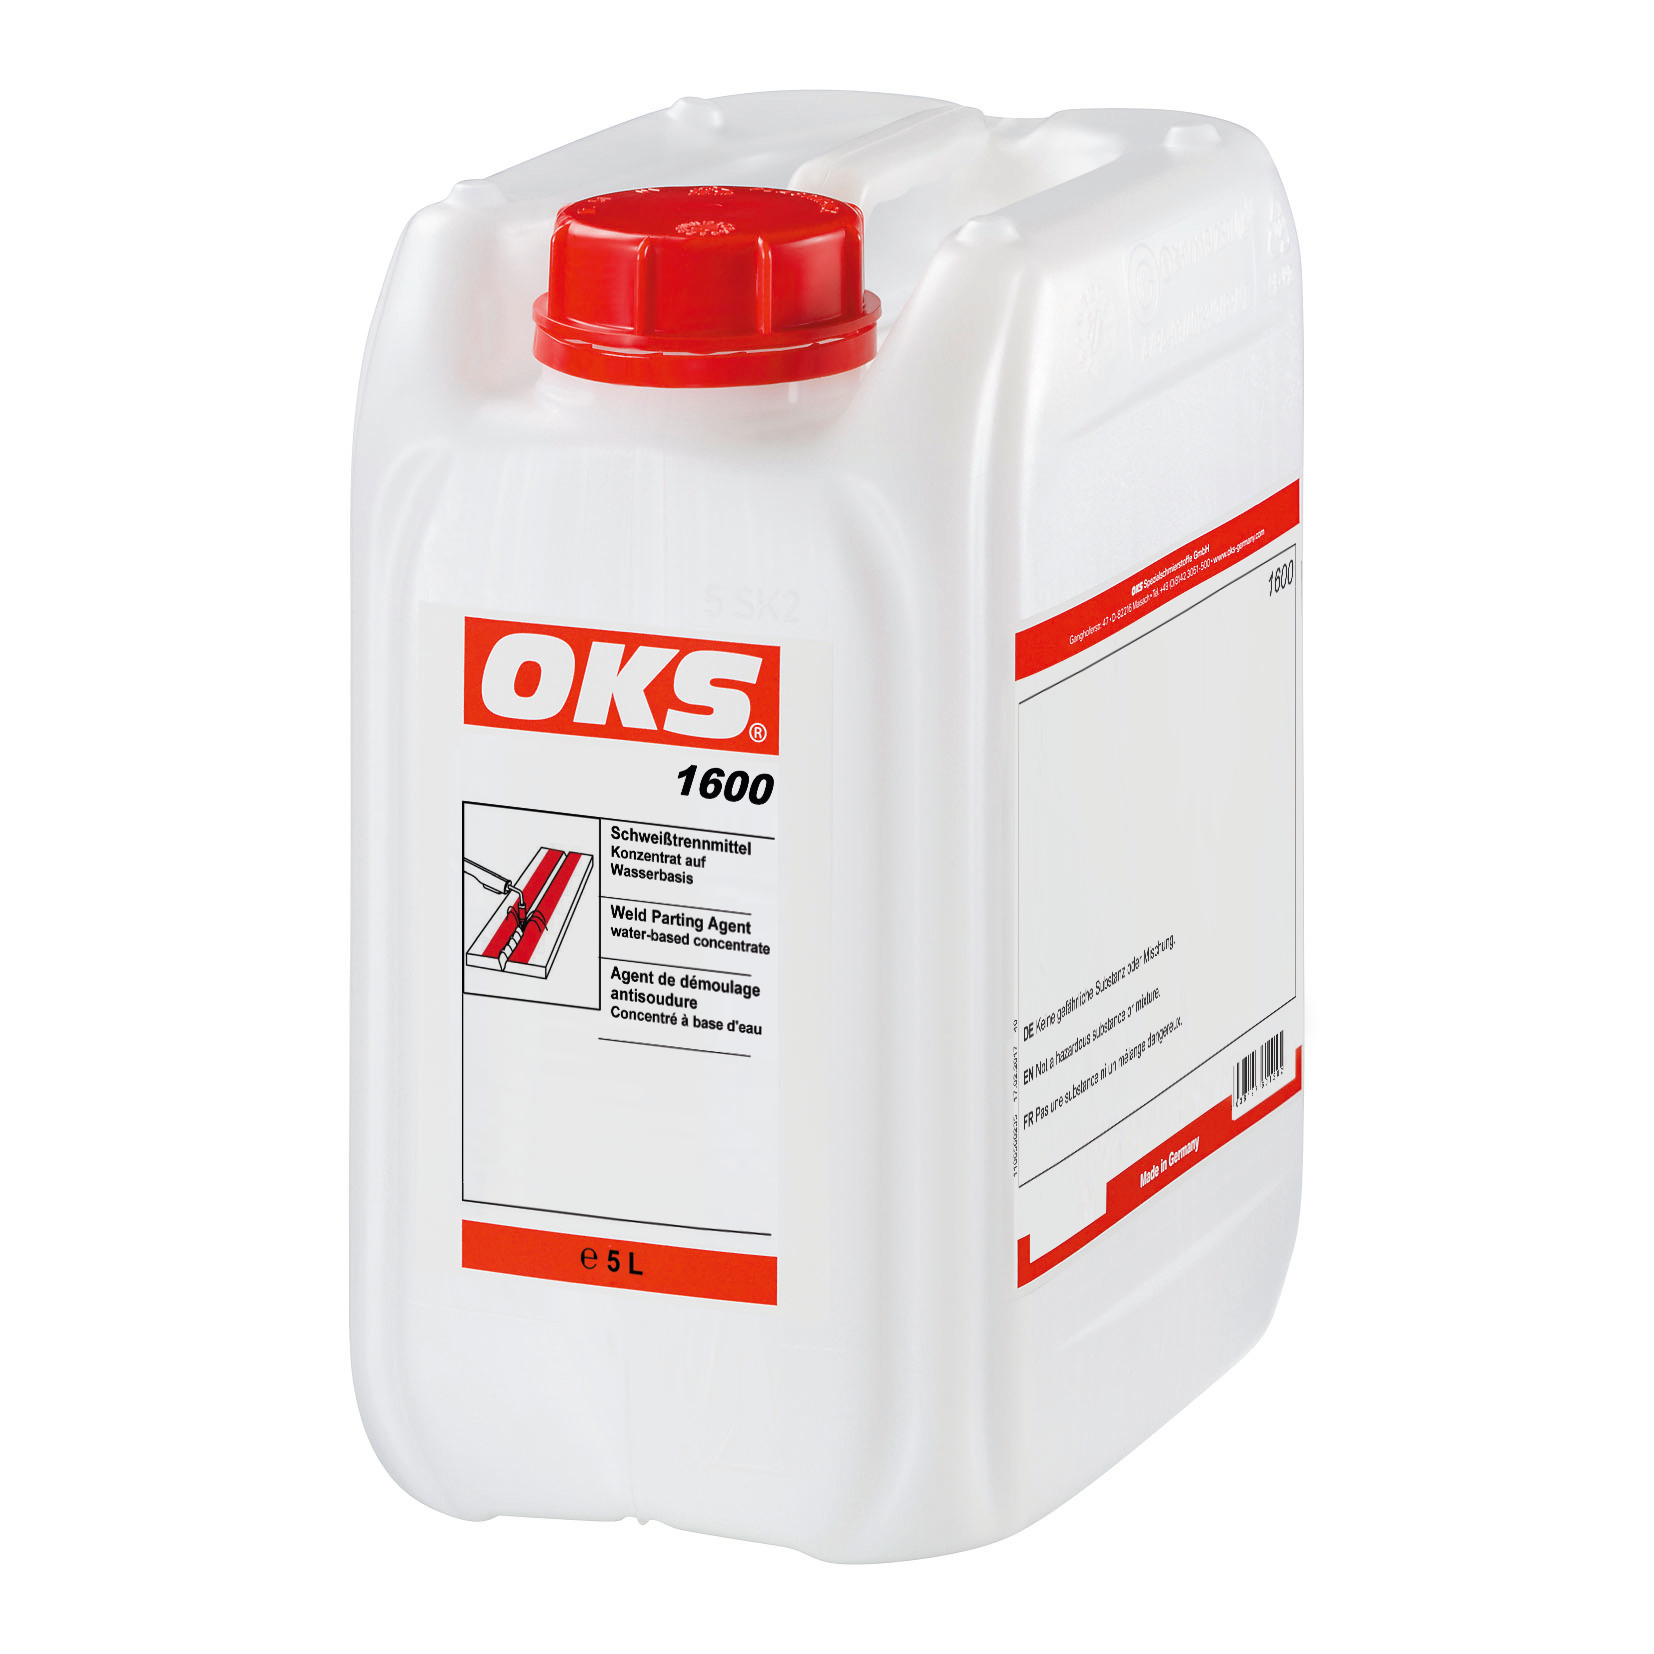 OKS1600-5 Milieuvriendelijk lossingsmiddel op waterbasis voor elektrisch lassen en lassen onder beschermingsgas.